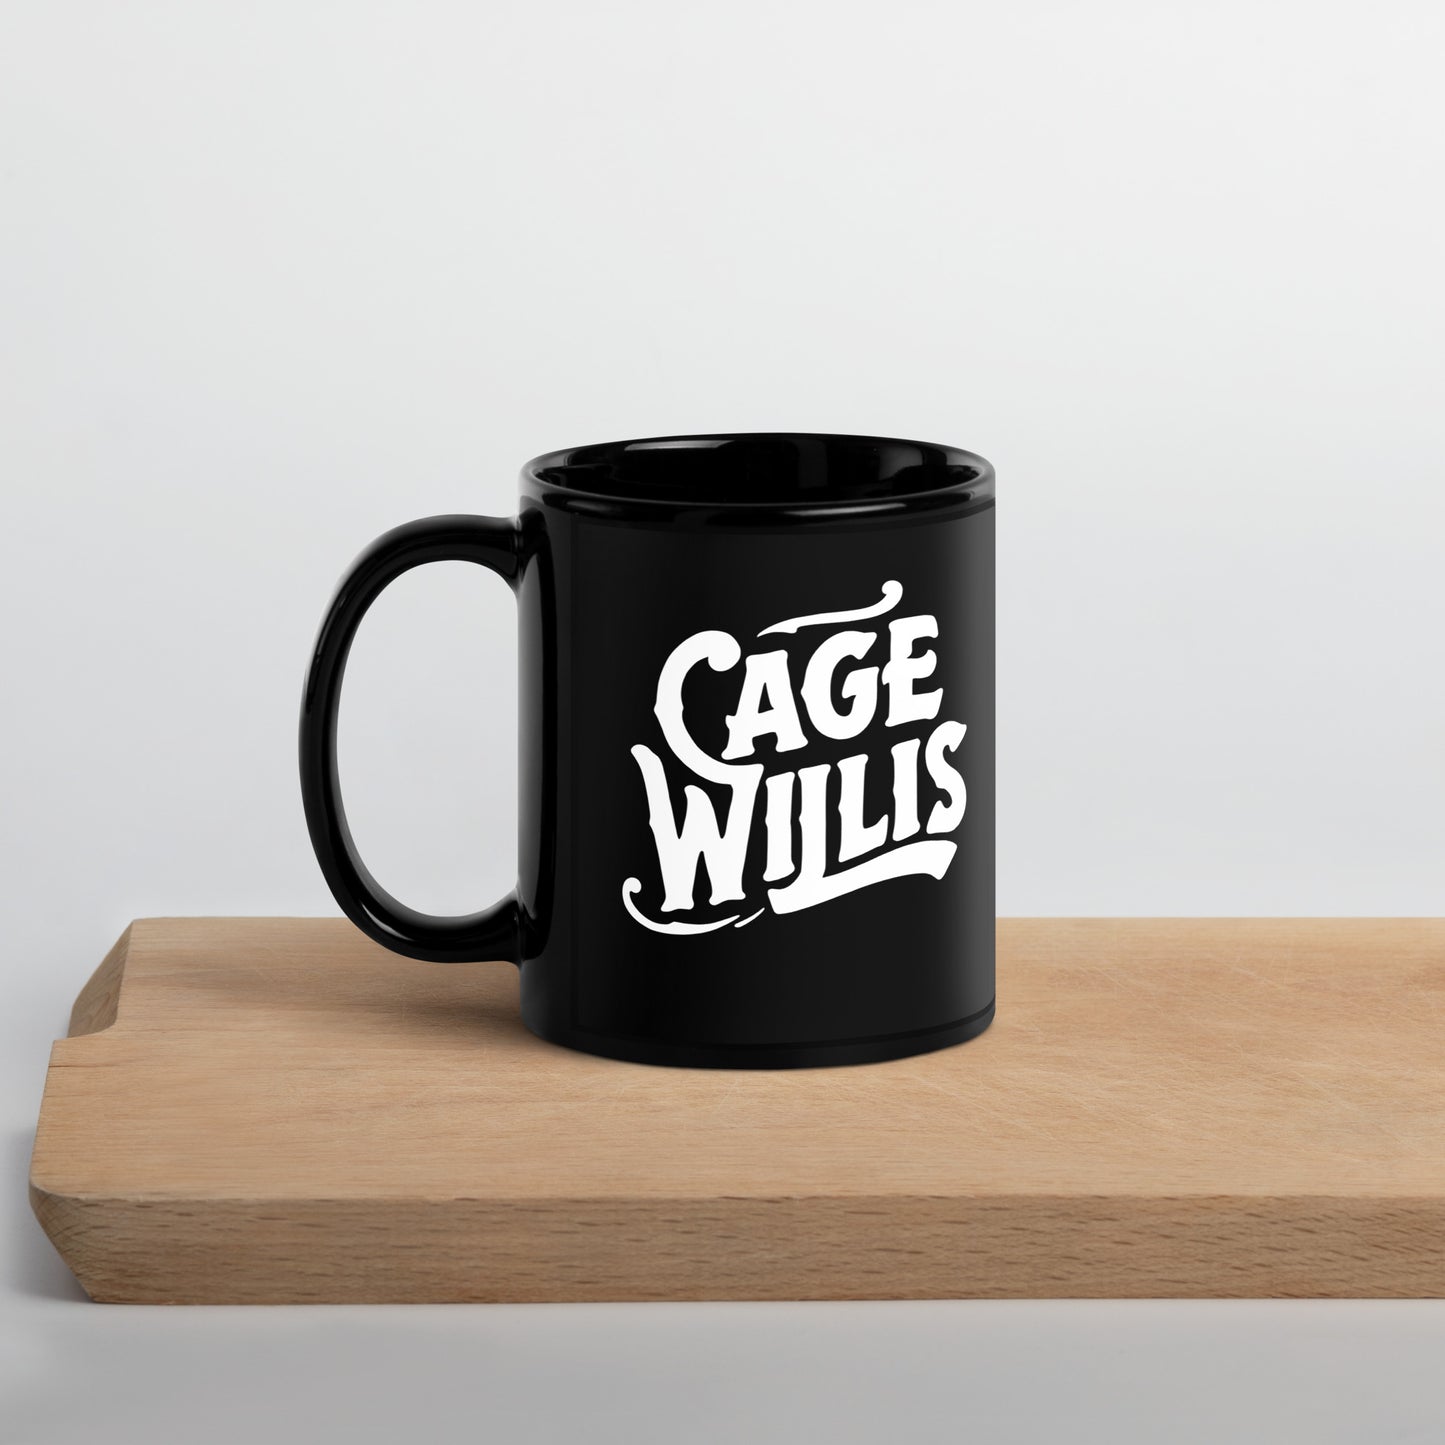 Cage Willis Mug